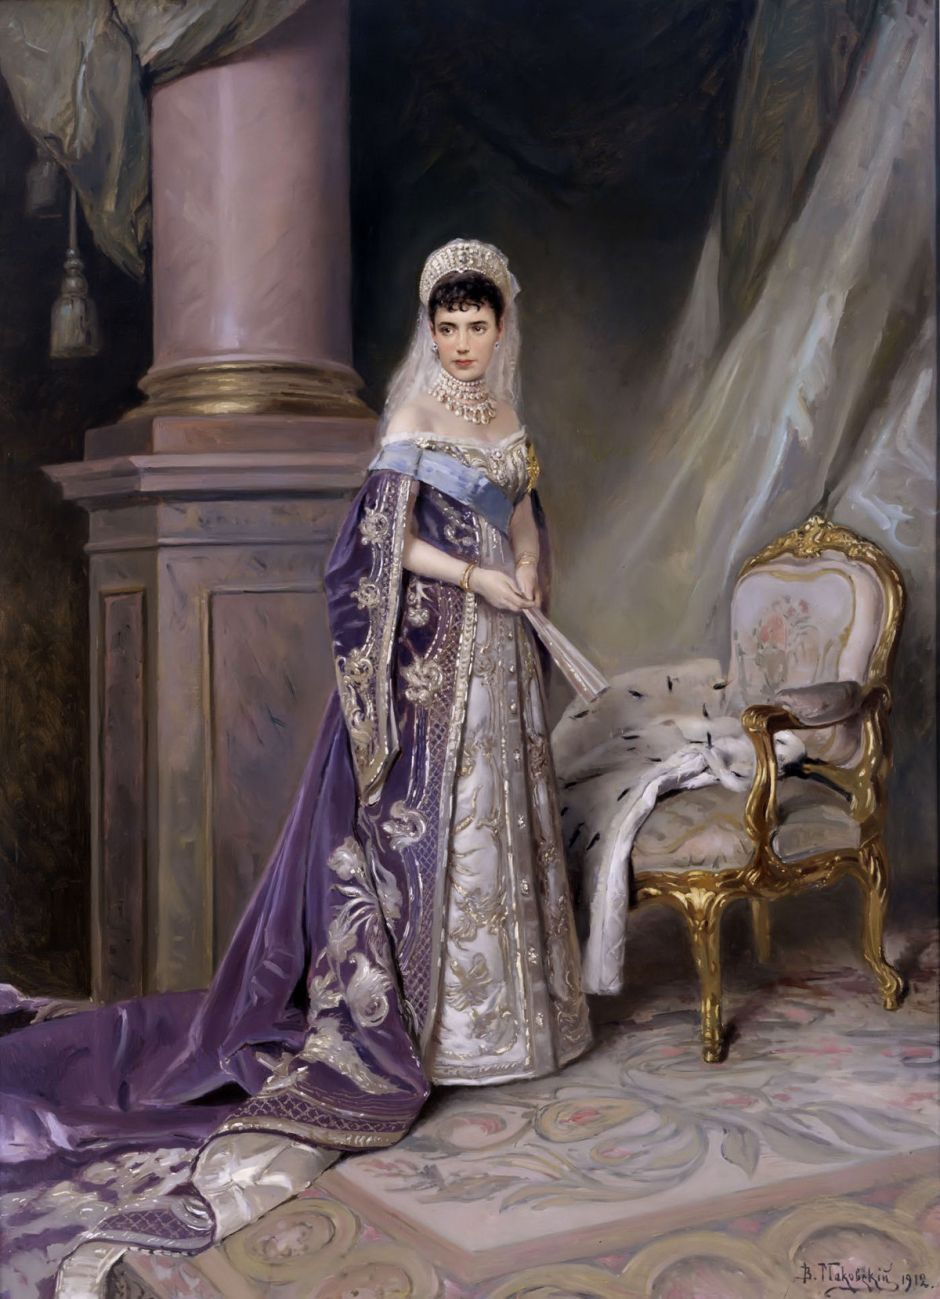 1200px-Maria_Fedorovna_by_V.Makovskiy_(1912,_Russian_museum)